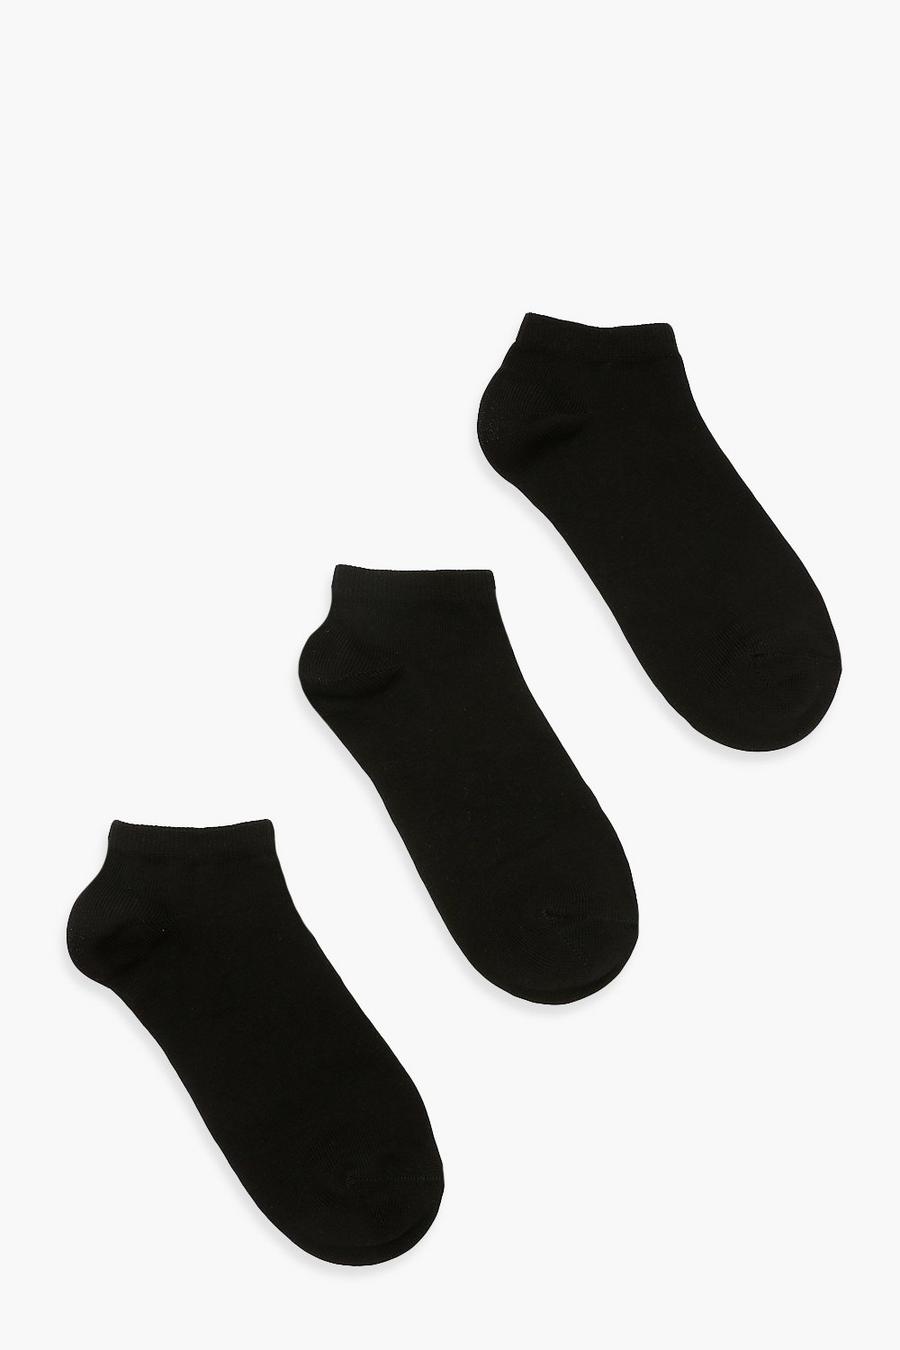 Pack de 3 calcetines deportivos, Black negro